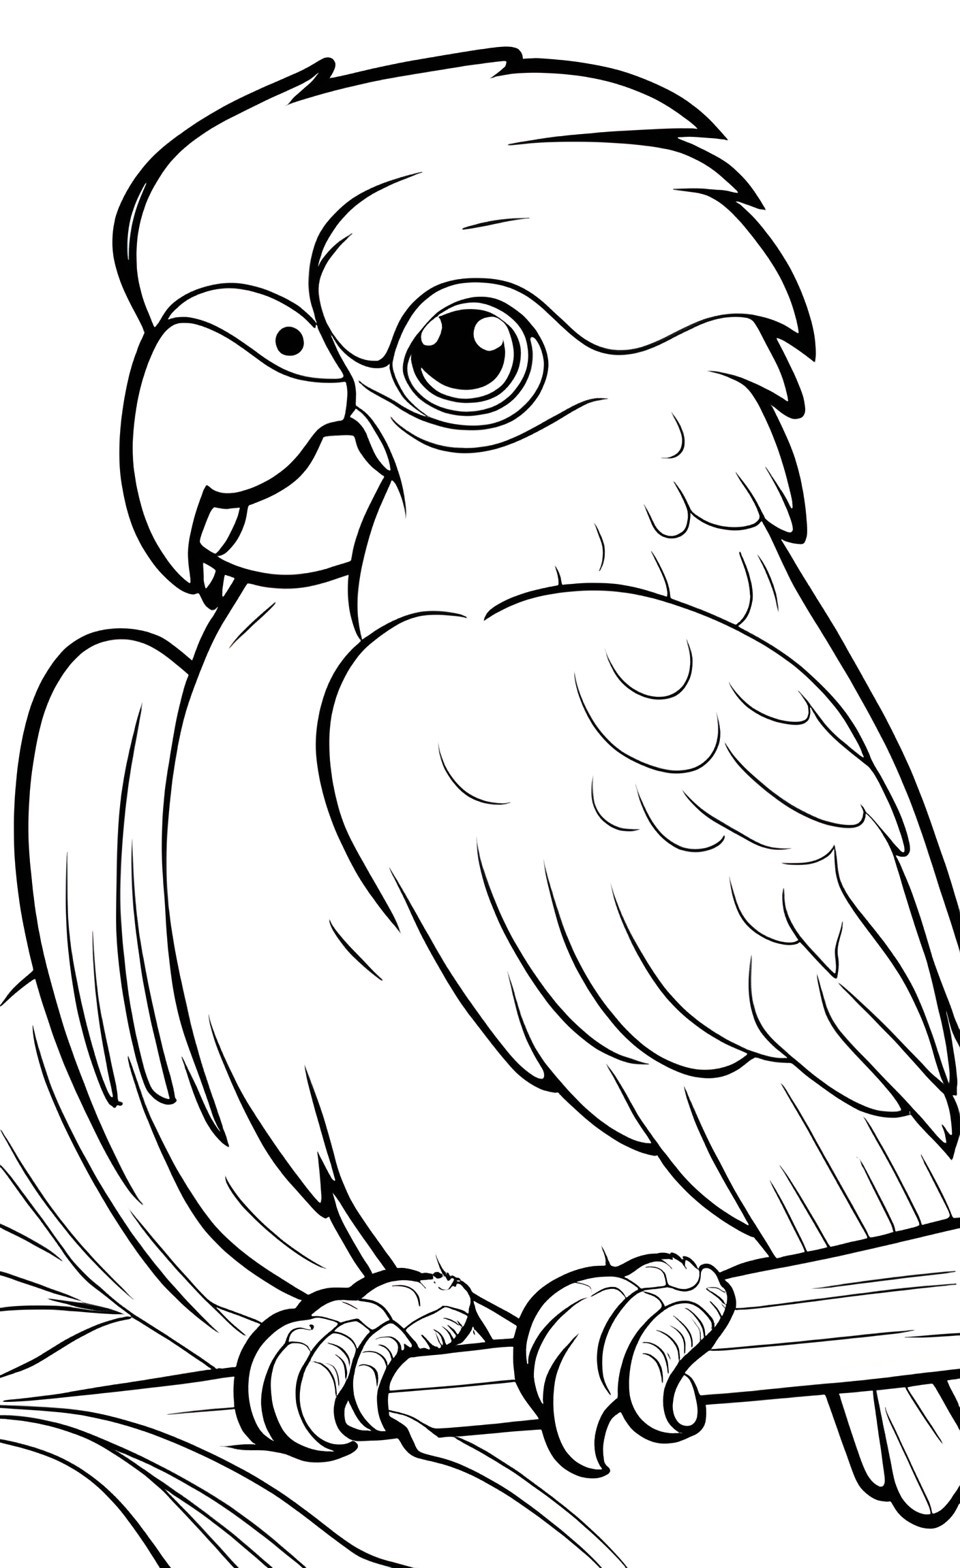 Beğenebileceğiniz 12 Papağan Boyama Sayfası | 20 Parrot Coloring Pages You May Like